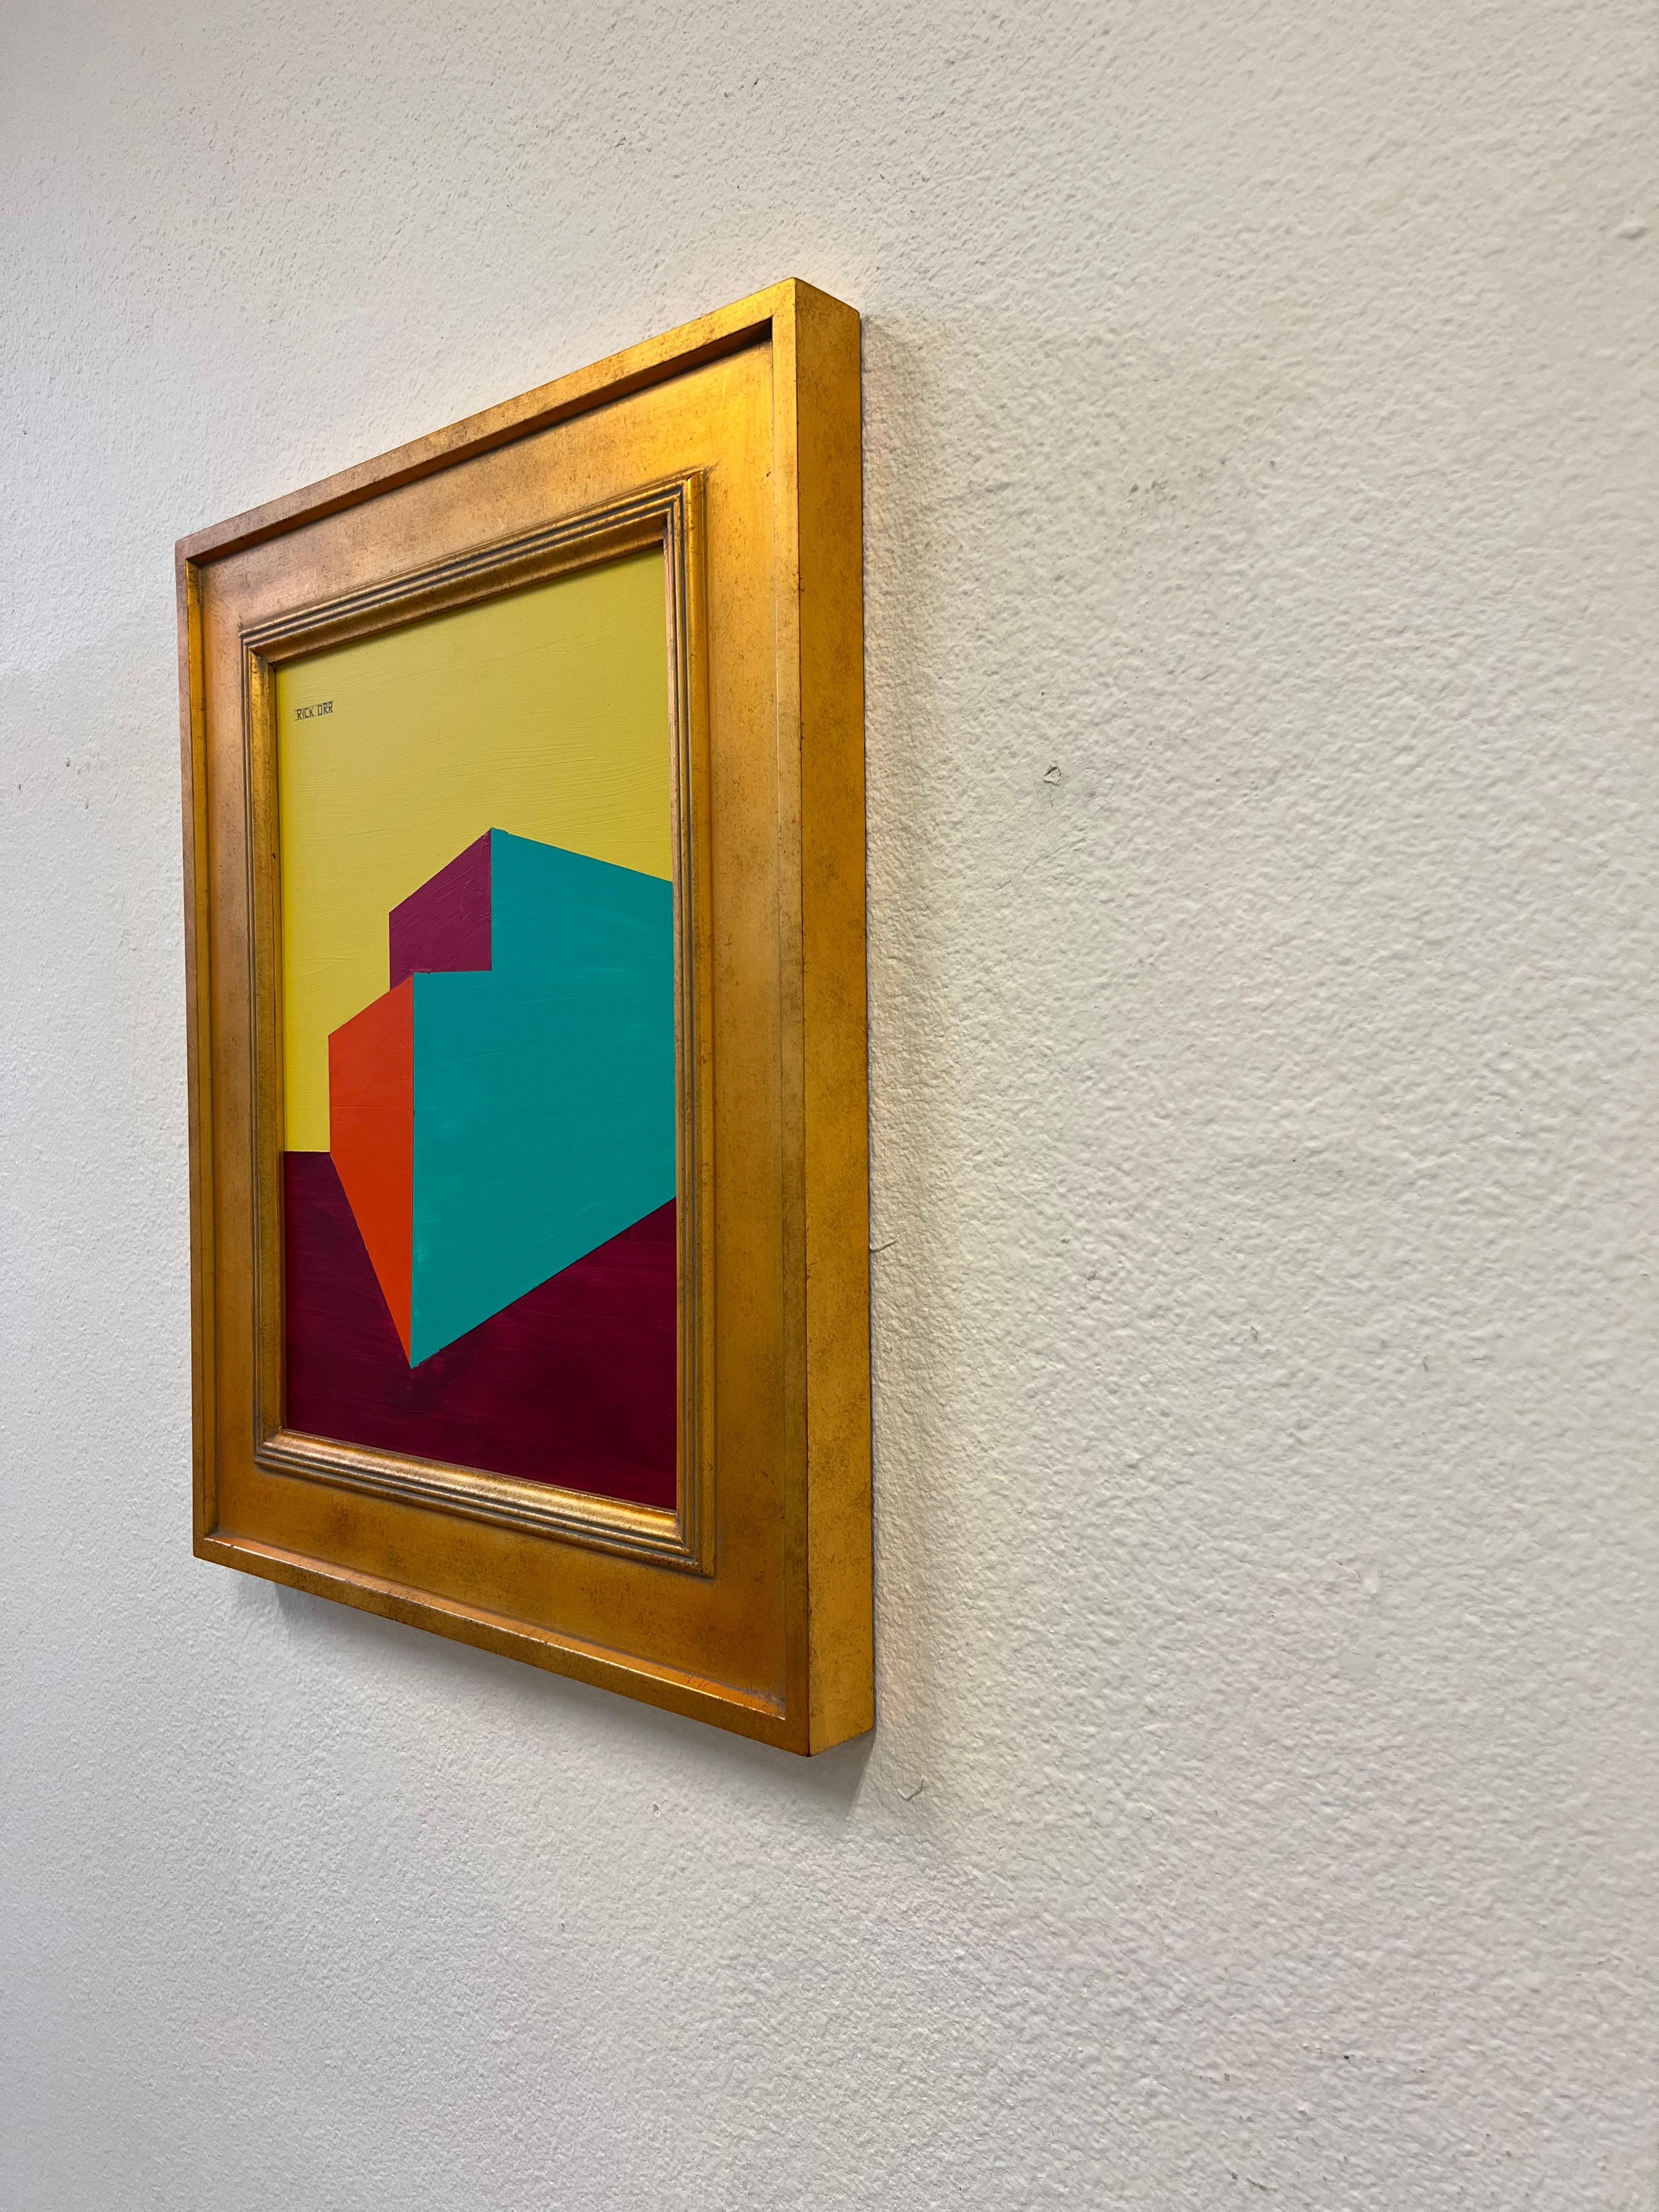 Peinture acrylique abstraite originale sur panneau avec un cadre en bois doré, par l'artiste américain Rick Orr. 

Mesures avec le cadre : 17,5